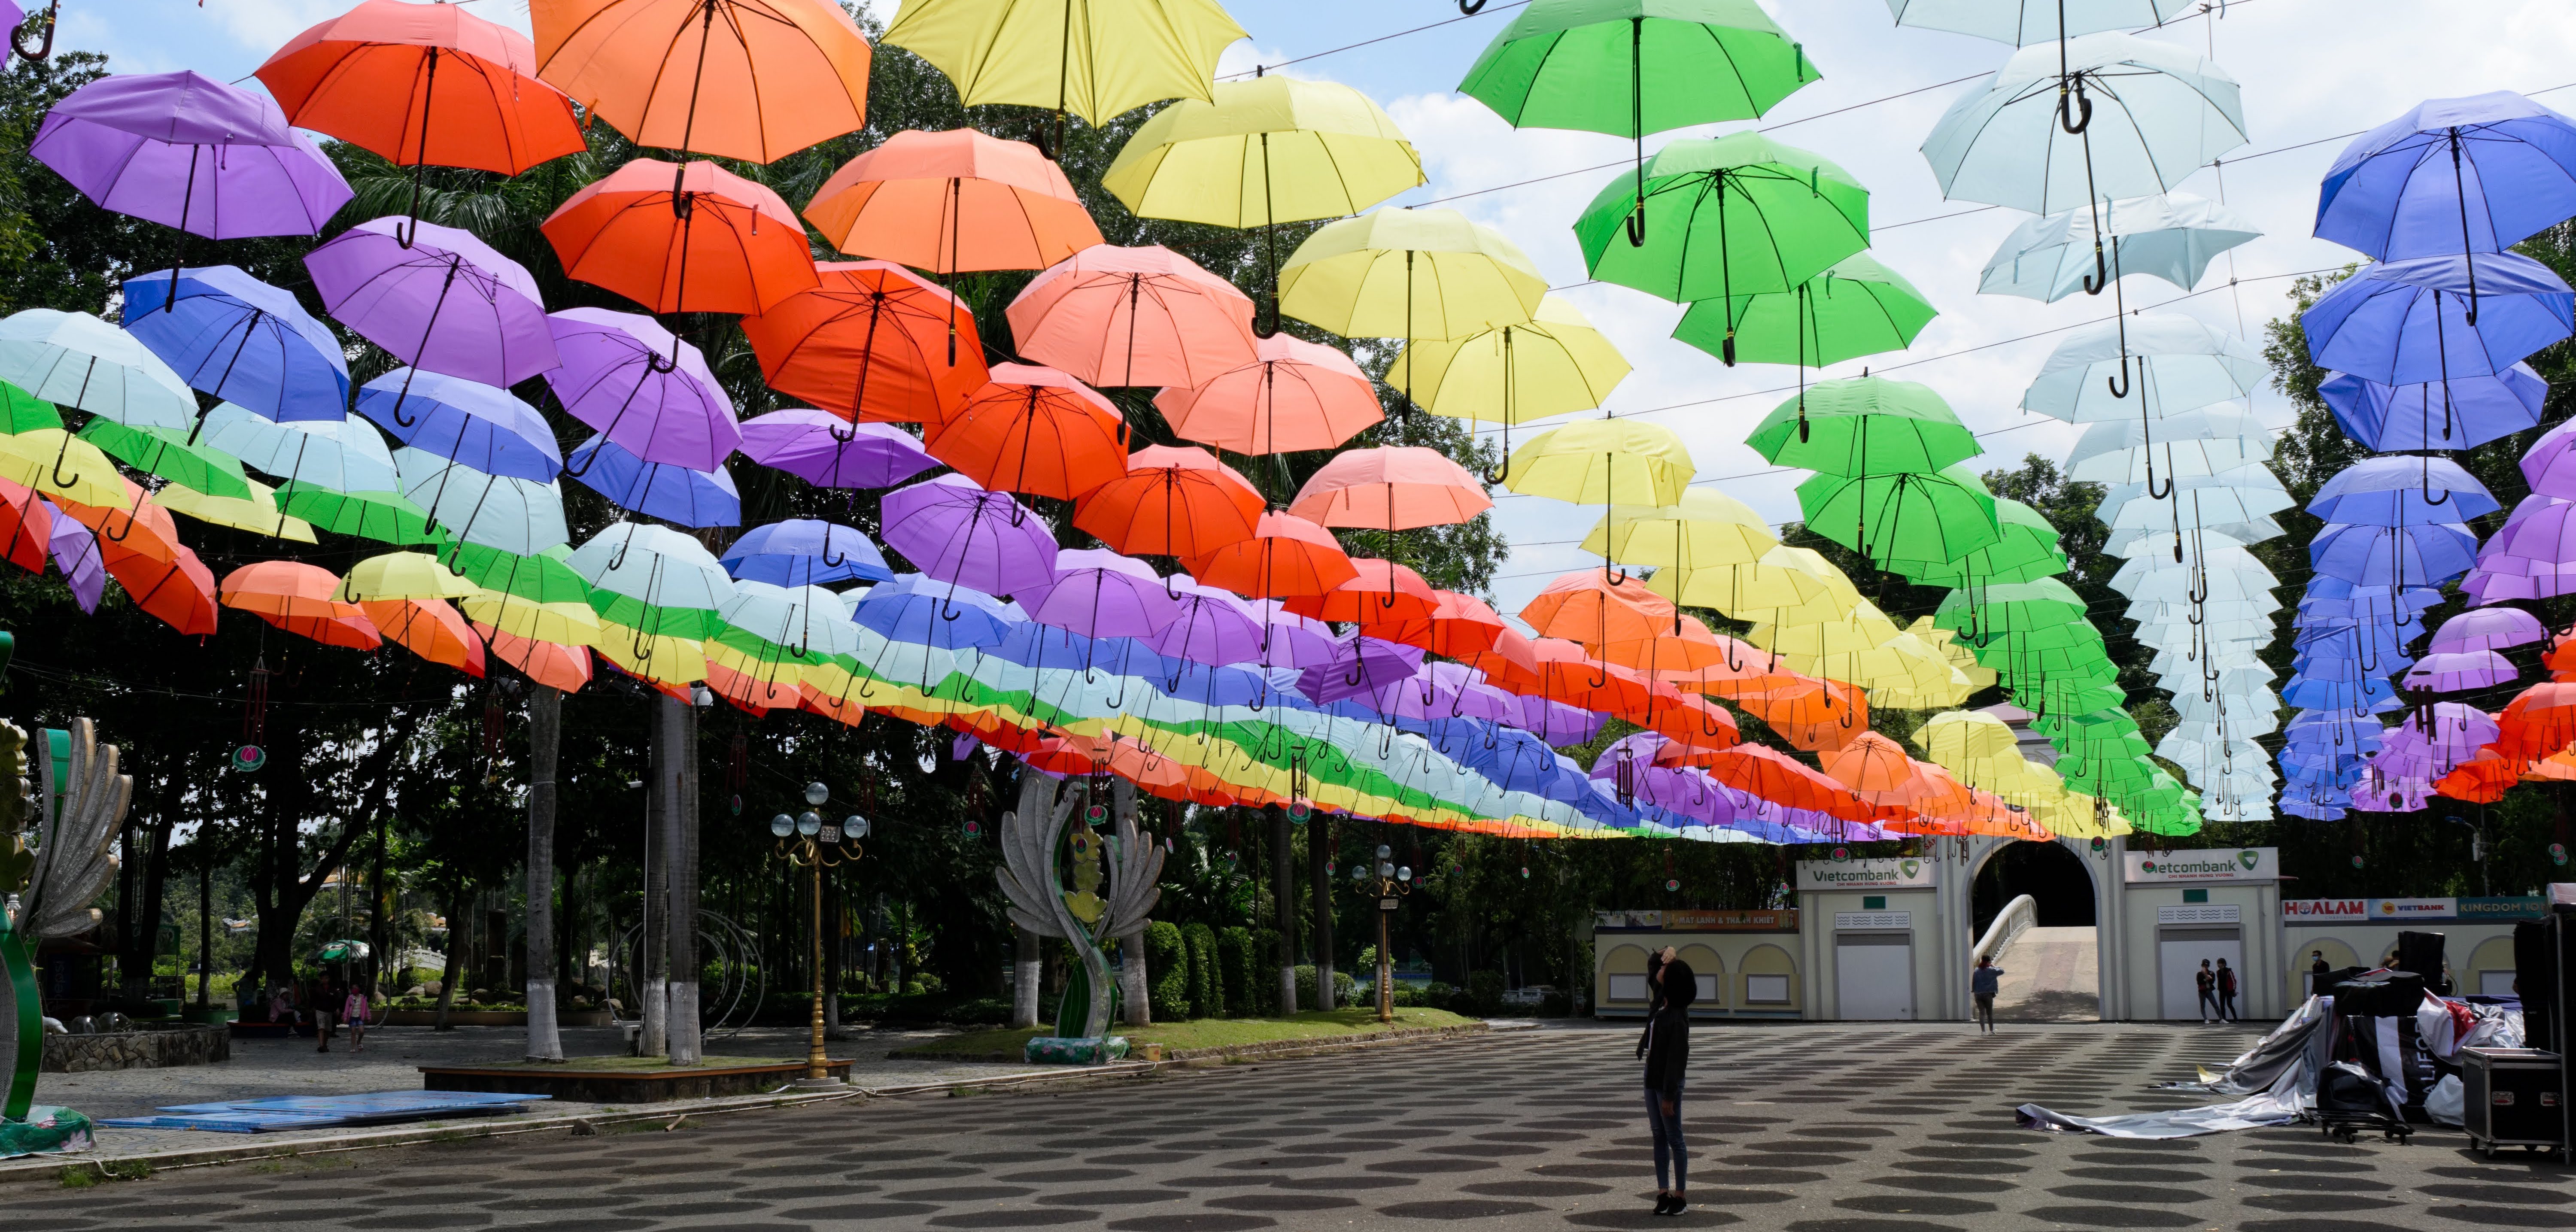 Colorful umbrellas in Hanoi, Vietnam